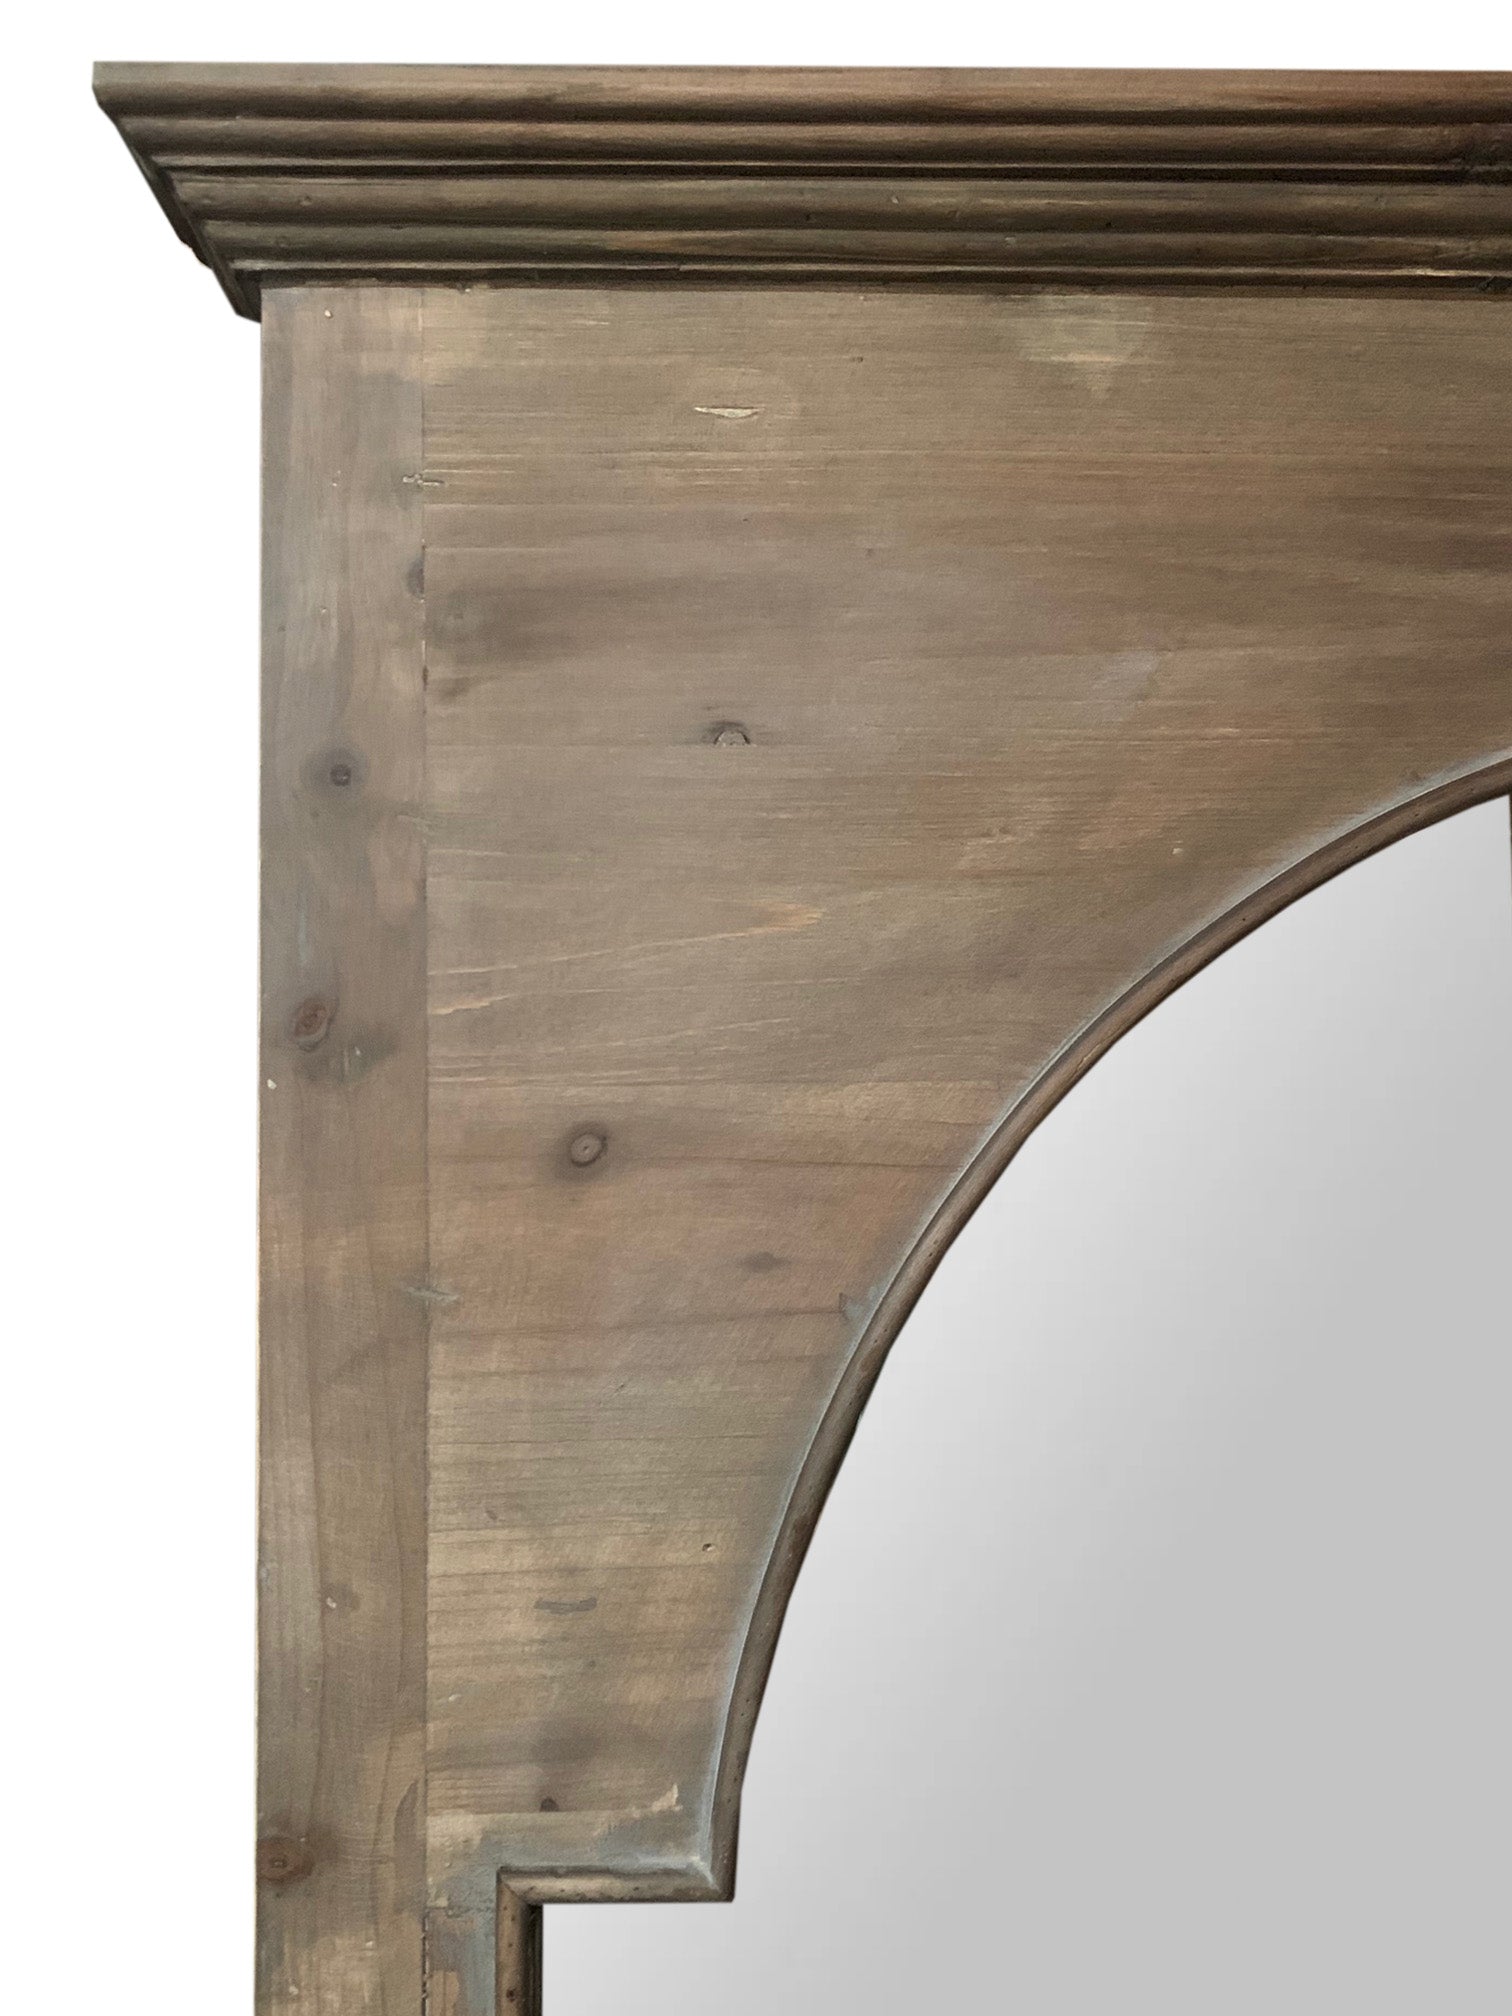 Rectangular Rustic Door Design Leaning Mirror with Door Hinge